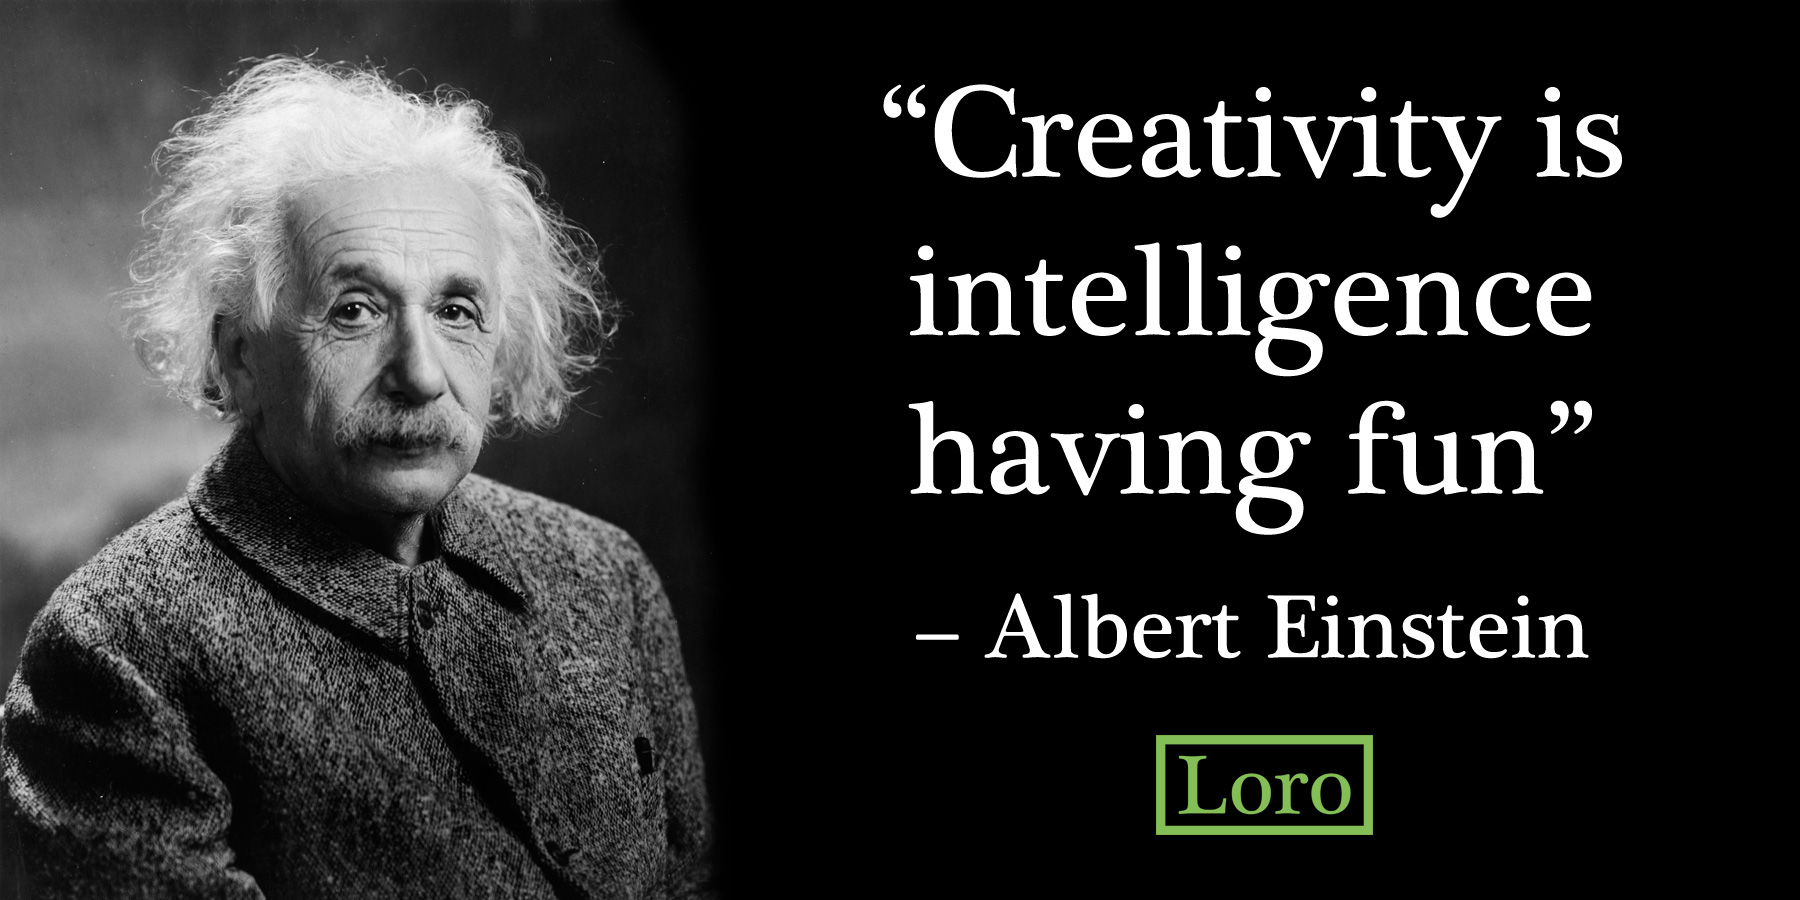 Je kreativita důležitější než inteligence?